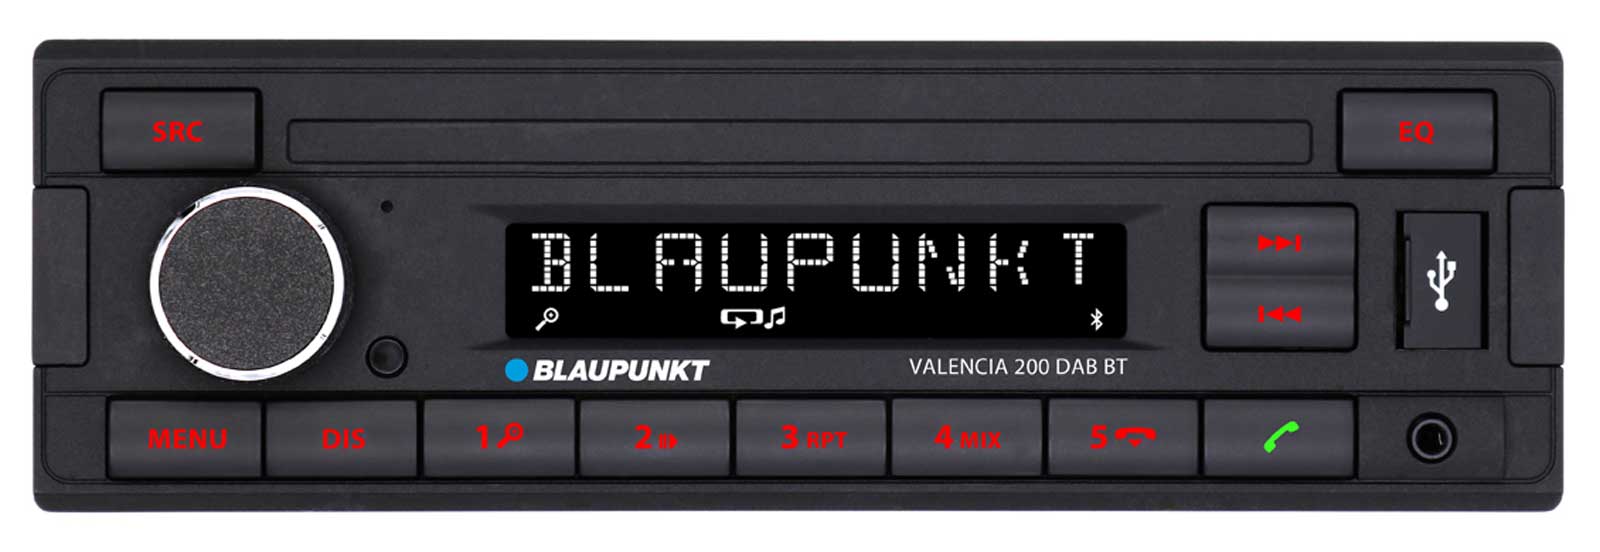 Blaupunkt Valencia 200 DAB BT - MP3-Autoradio mit DAB / Bluetooth / USB / AUX-IN